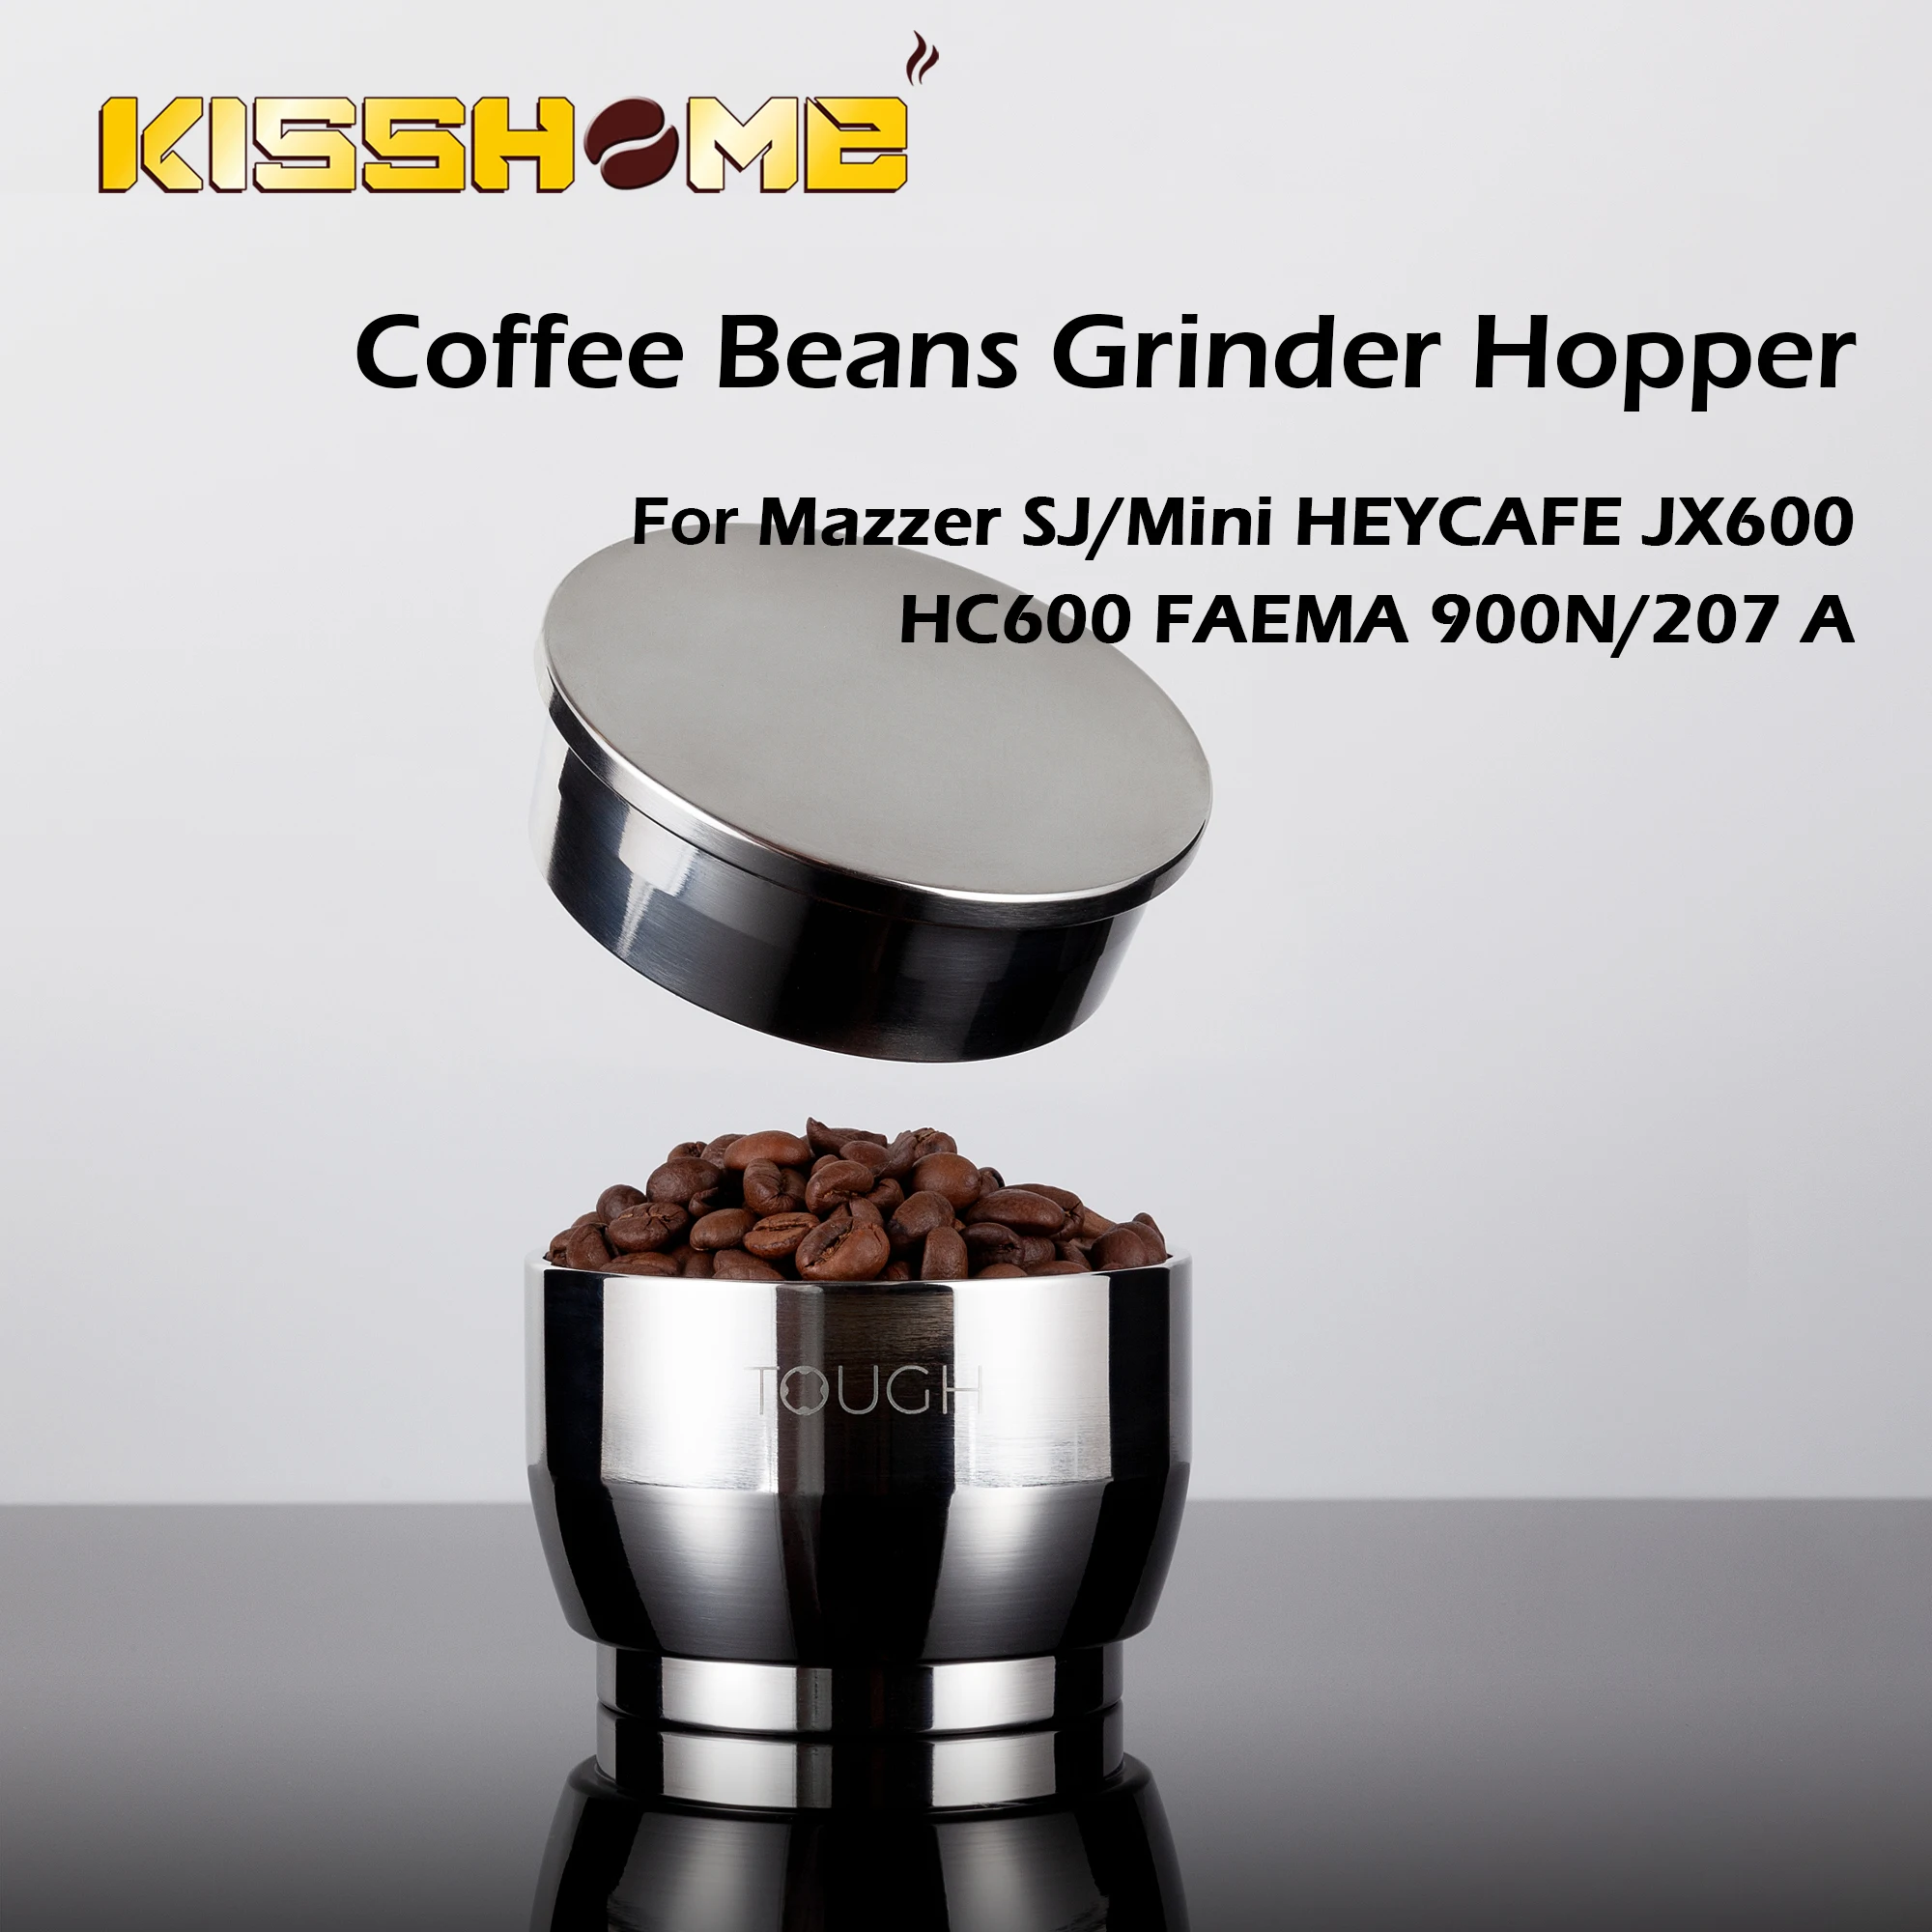 https://ae01.alicdn.com/kf/H359d6e242bbb4b1ead1a49958a21606d3/Coffee-Beans-Grinder-Hopper-For-Mazzer-SJ-Mini-HEYCAFE-JX600-HC600-FAEMA-900N-207-Household-Stainless.jpg